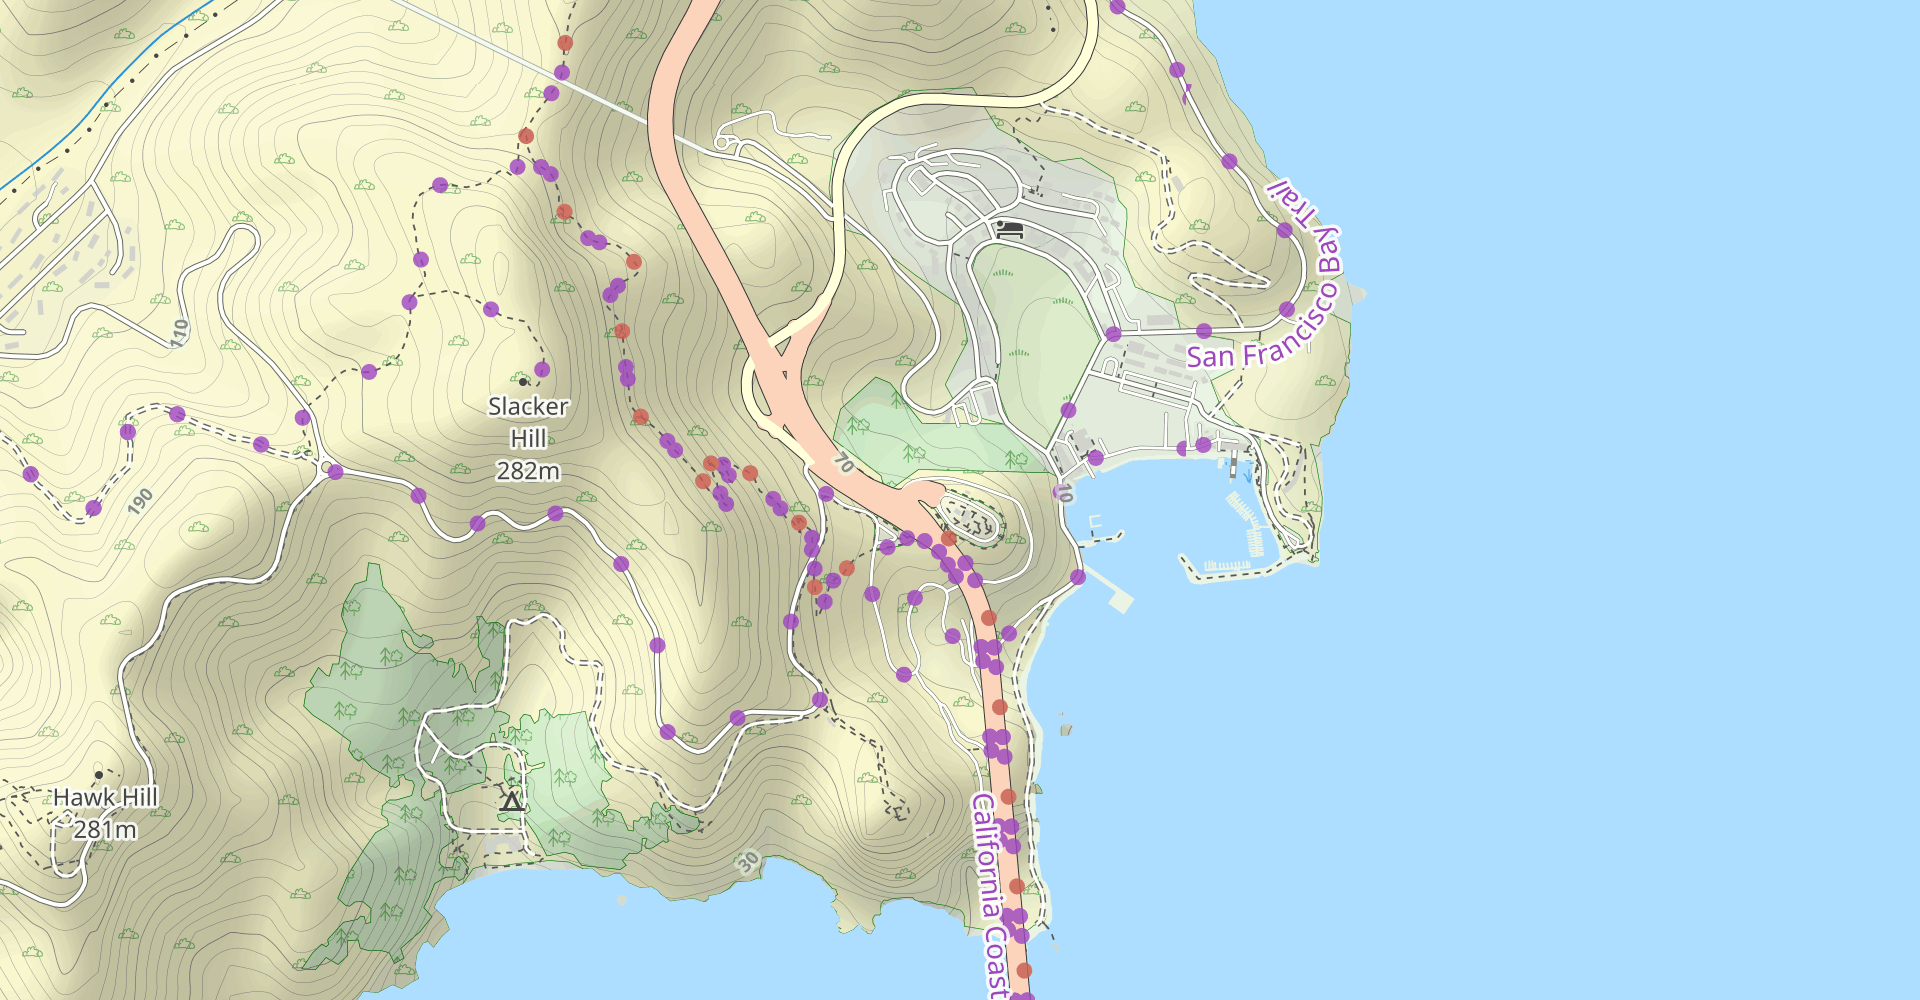 Slacker Hill and Hawk Hill via Coastal Trail